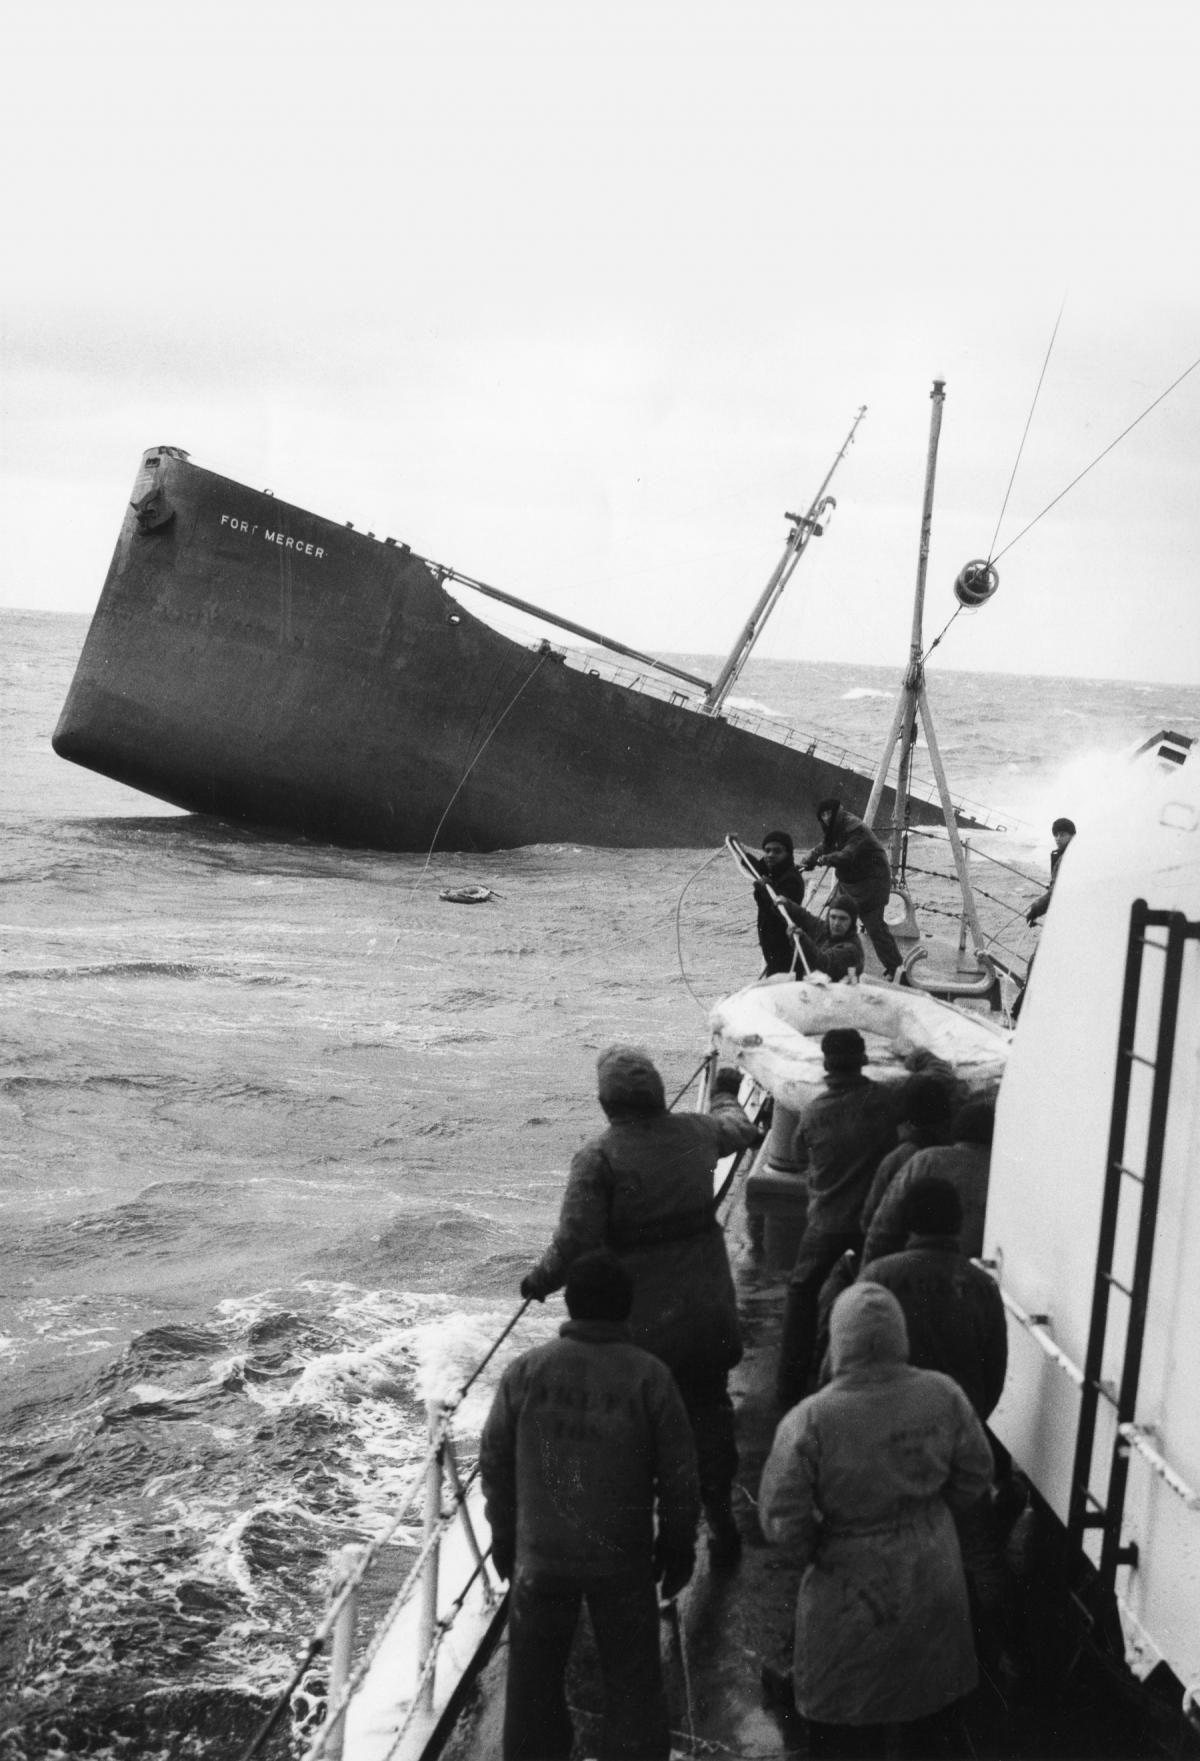 Tanker Fort Mercer sinking of the coast of Massachusetts in 1952